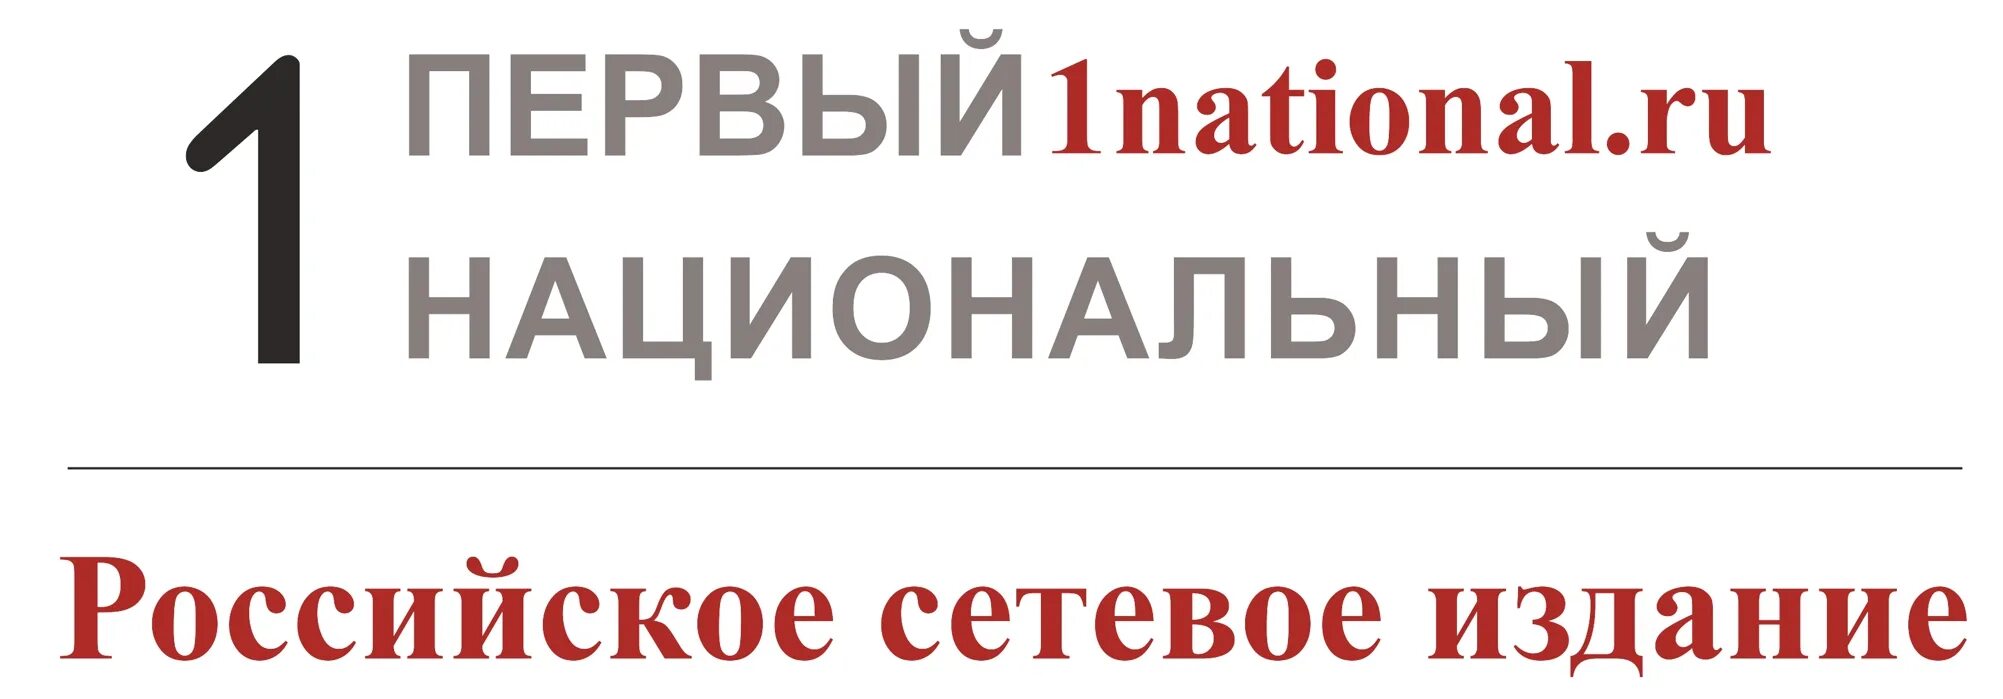 1 национальный 2000. Первый национальный. Российский национальный канал. 1 Национальный лого. Телеканал 1 российский национальный логотип.